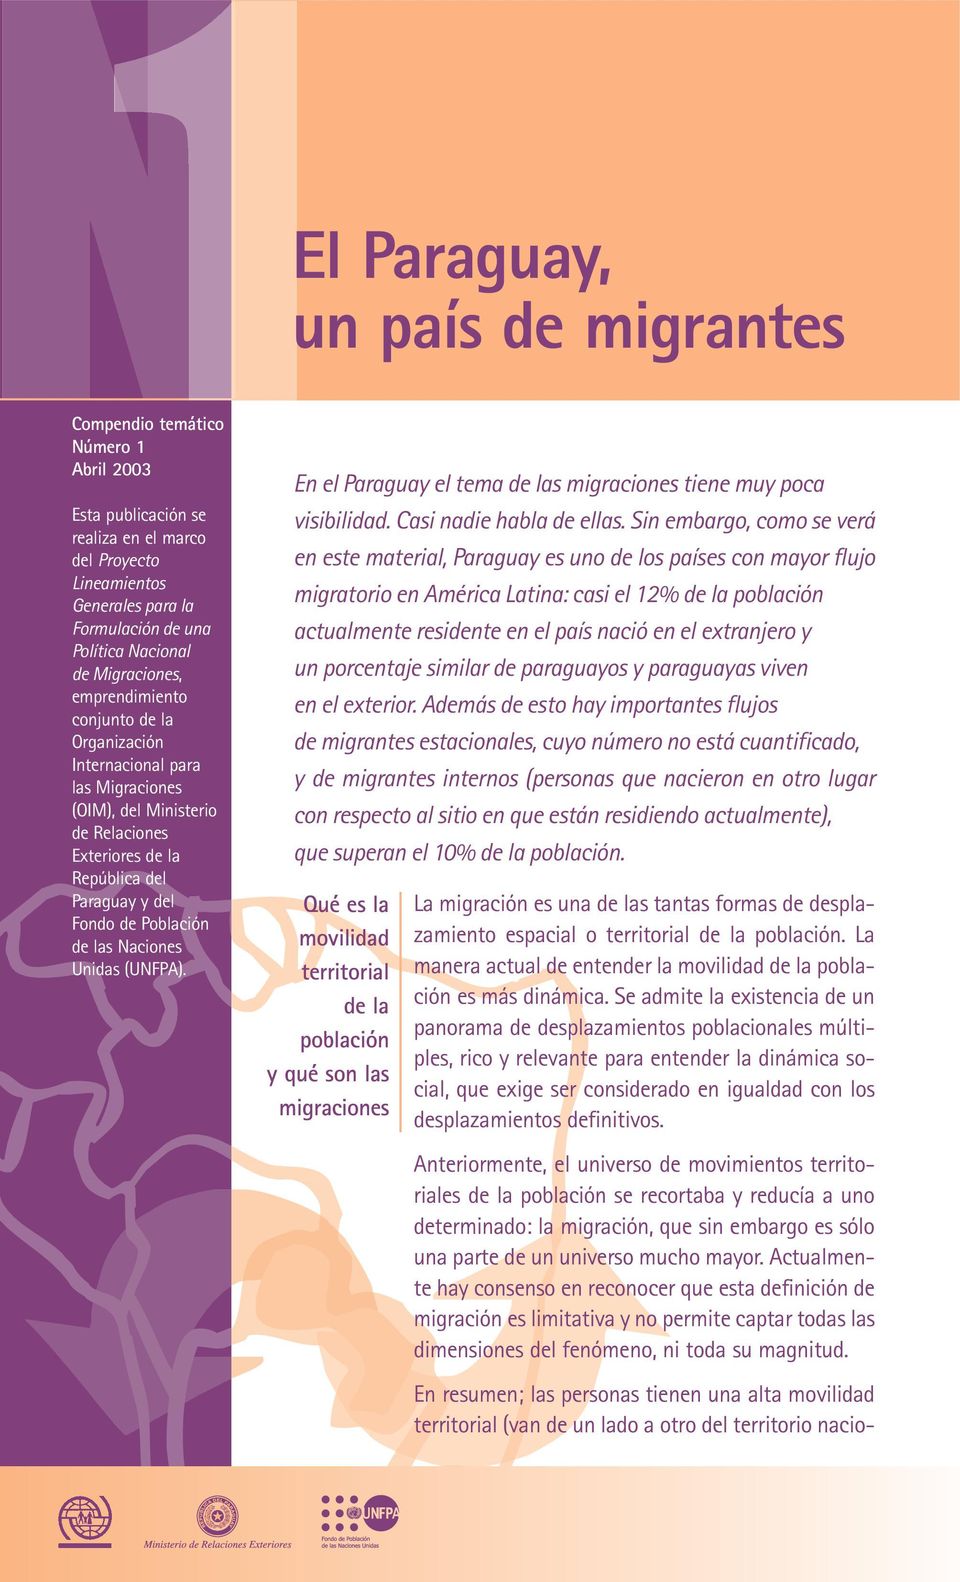 Naciones Unidas (UNFPA). En el Paraguay el tema de las migraciones tiene muy poca visibilidad. Casi nadie habla de ellas.